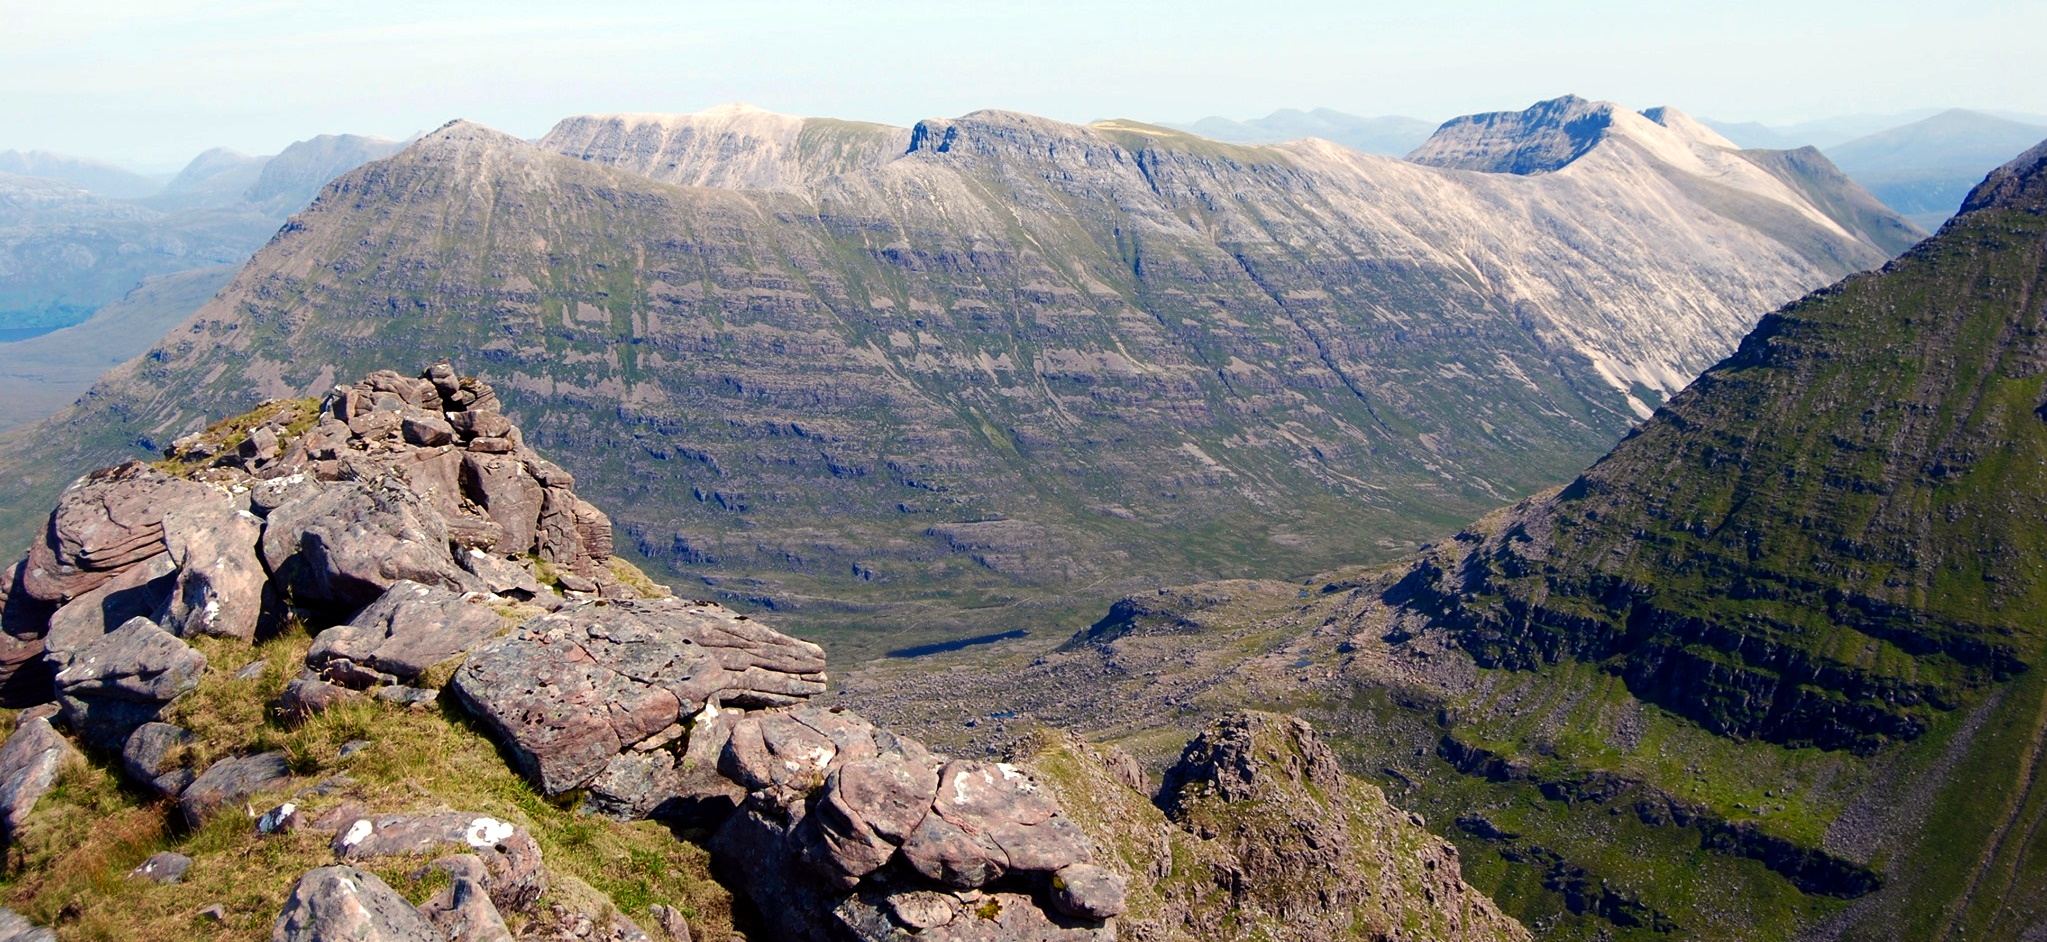 Beinn Eighe summit ridge from Liathach in Torridon Region of NW Scotland